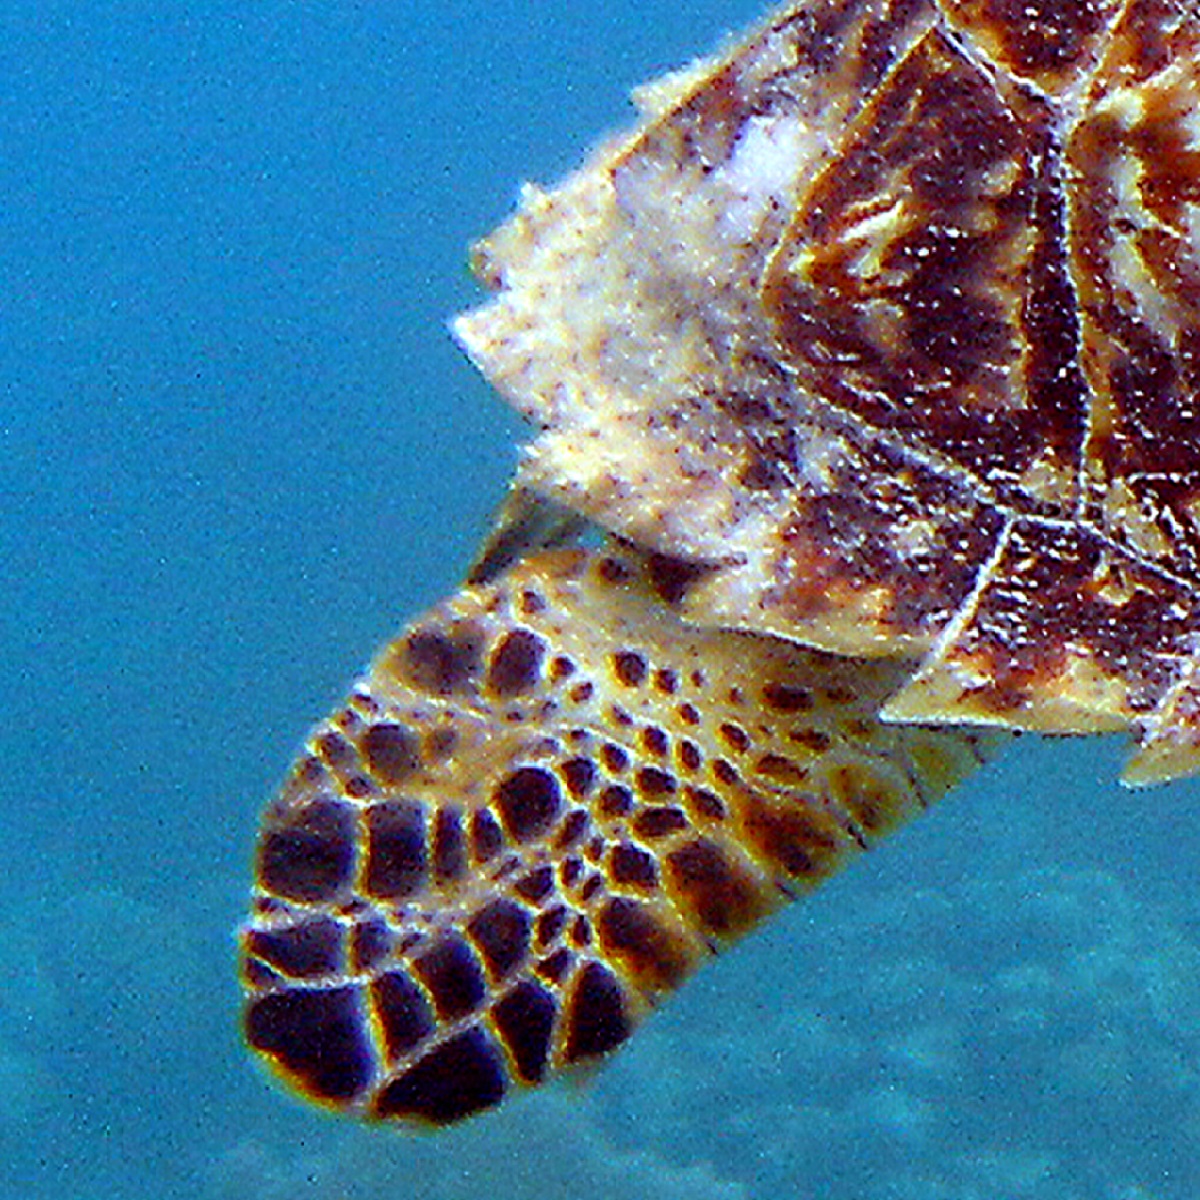 Hind leg of Hawksbill Sea turtle.